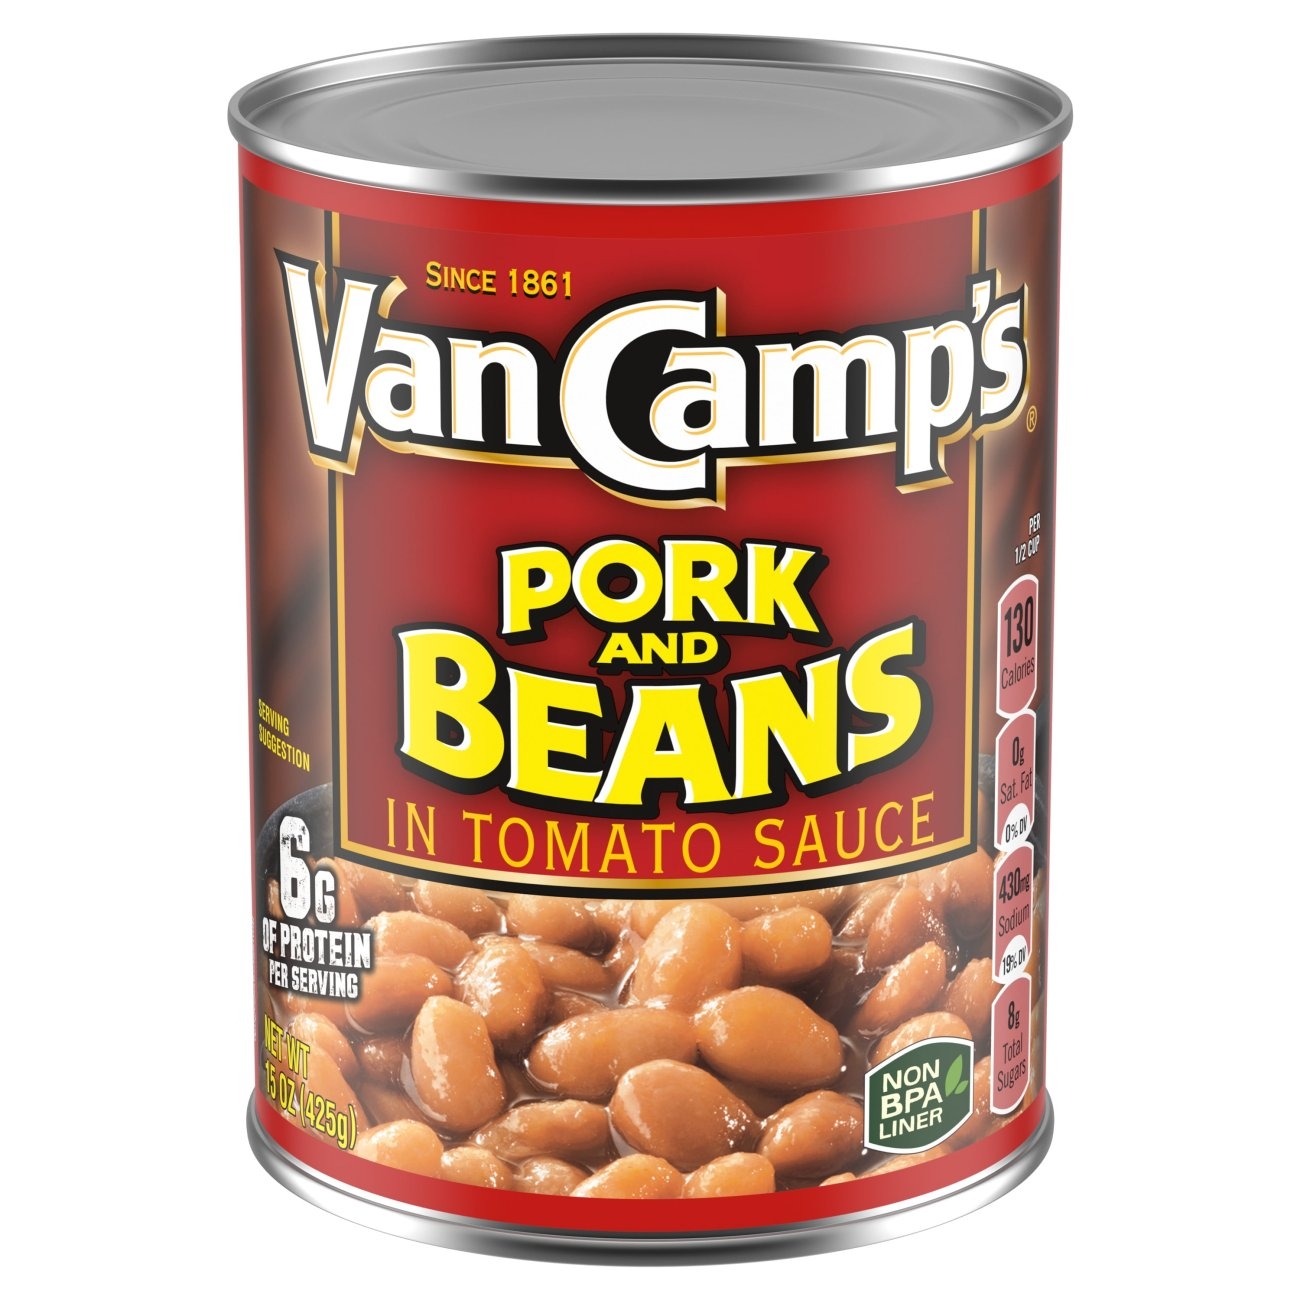 Van-Camp-s-Pork-and-Beans-Canned-Beans-15-oz_6eae6d42-51d9-4113-aefc-a1722035c453.e84b3de2b53...jpeg